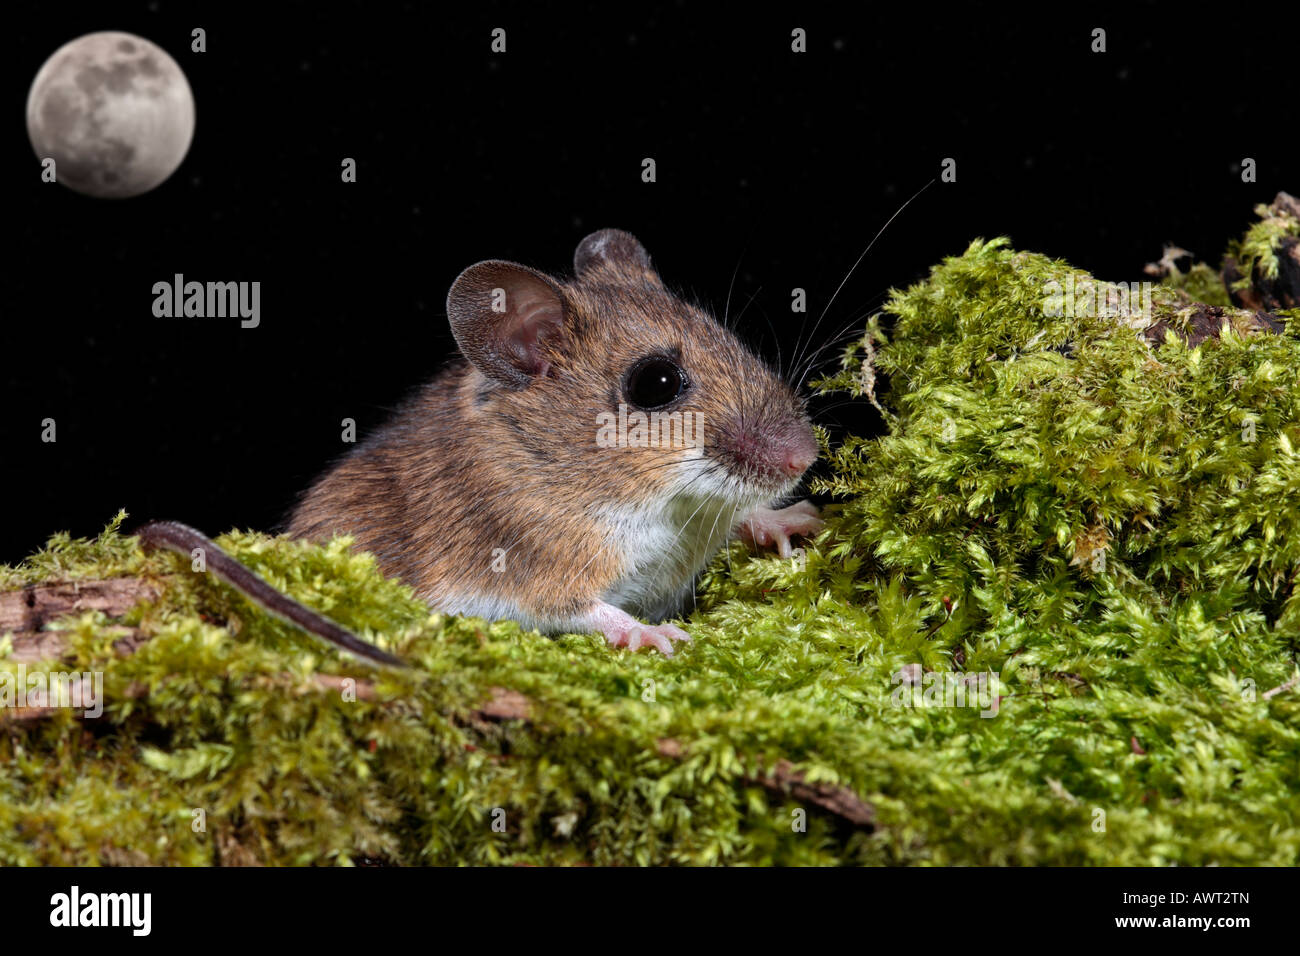 Mouse di legno lunga coda di topo di campo Apodemus sylvaticus sul log cercando alert Potton Bedfordshire Foto Stock